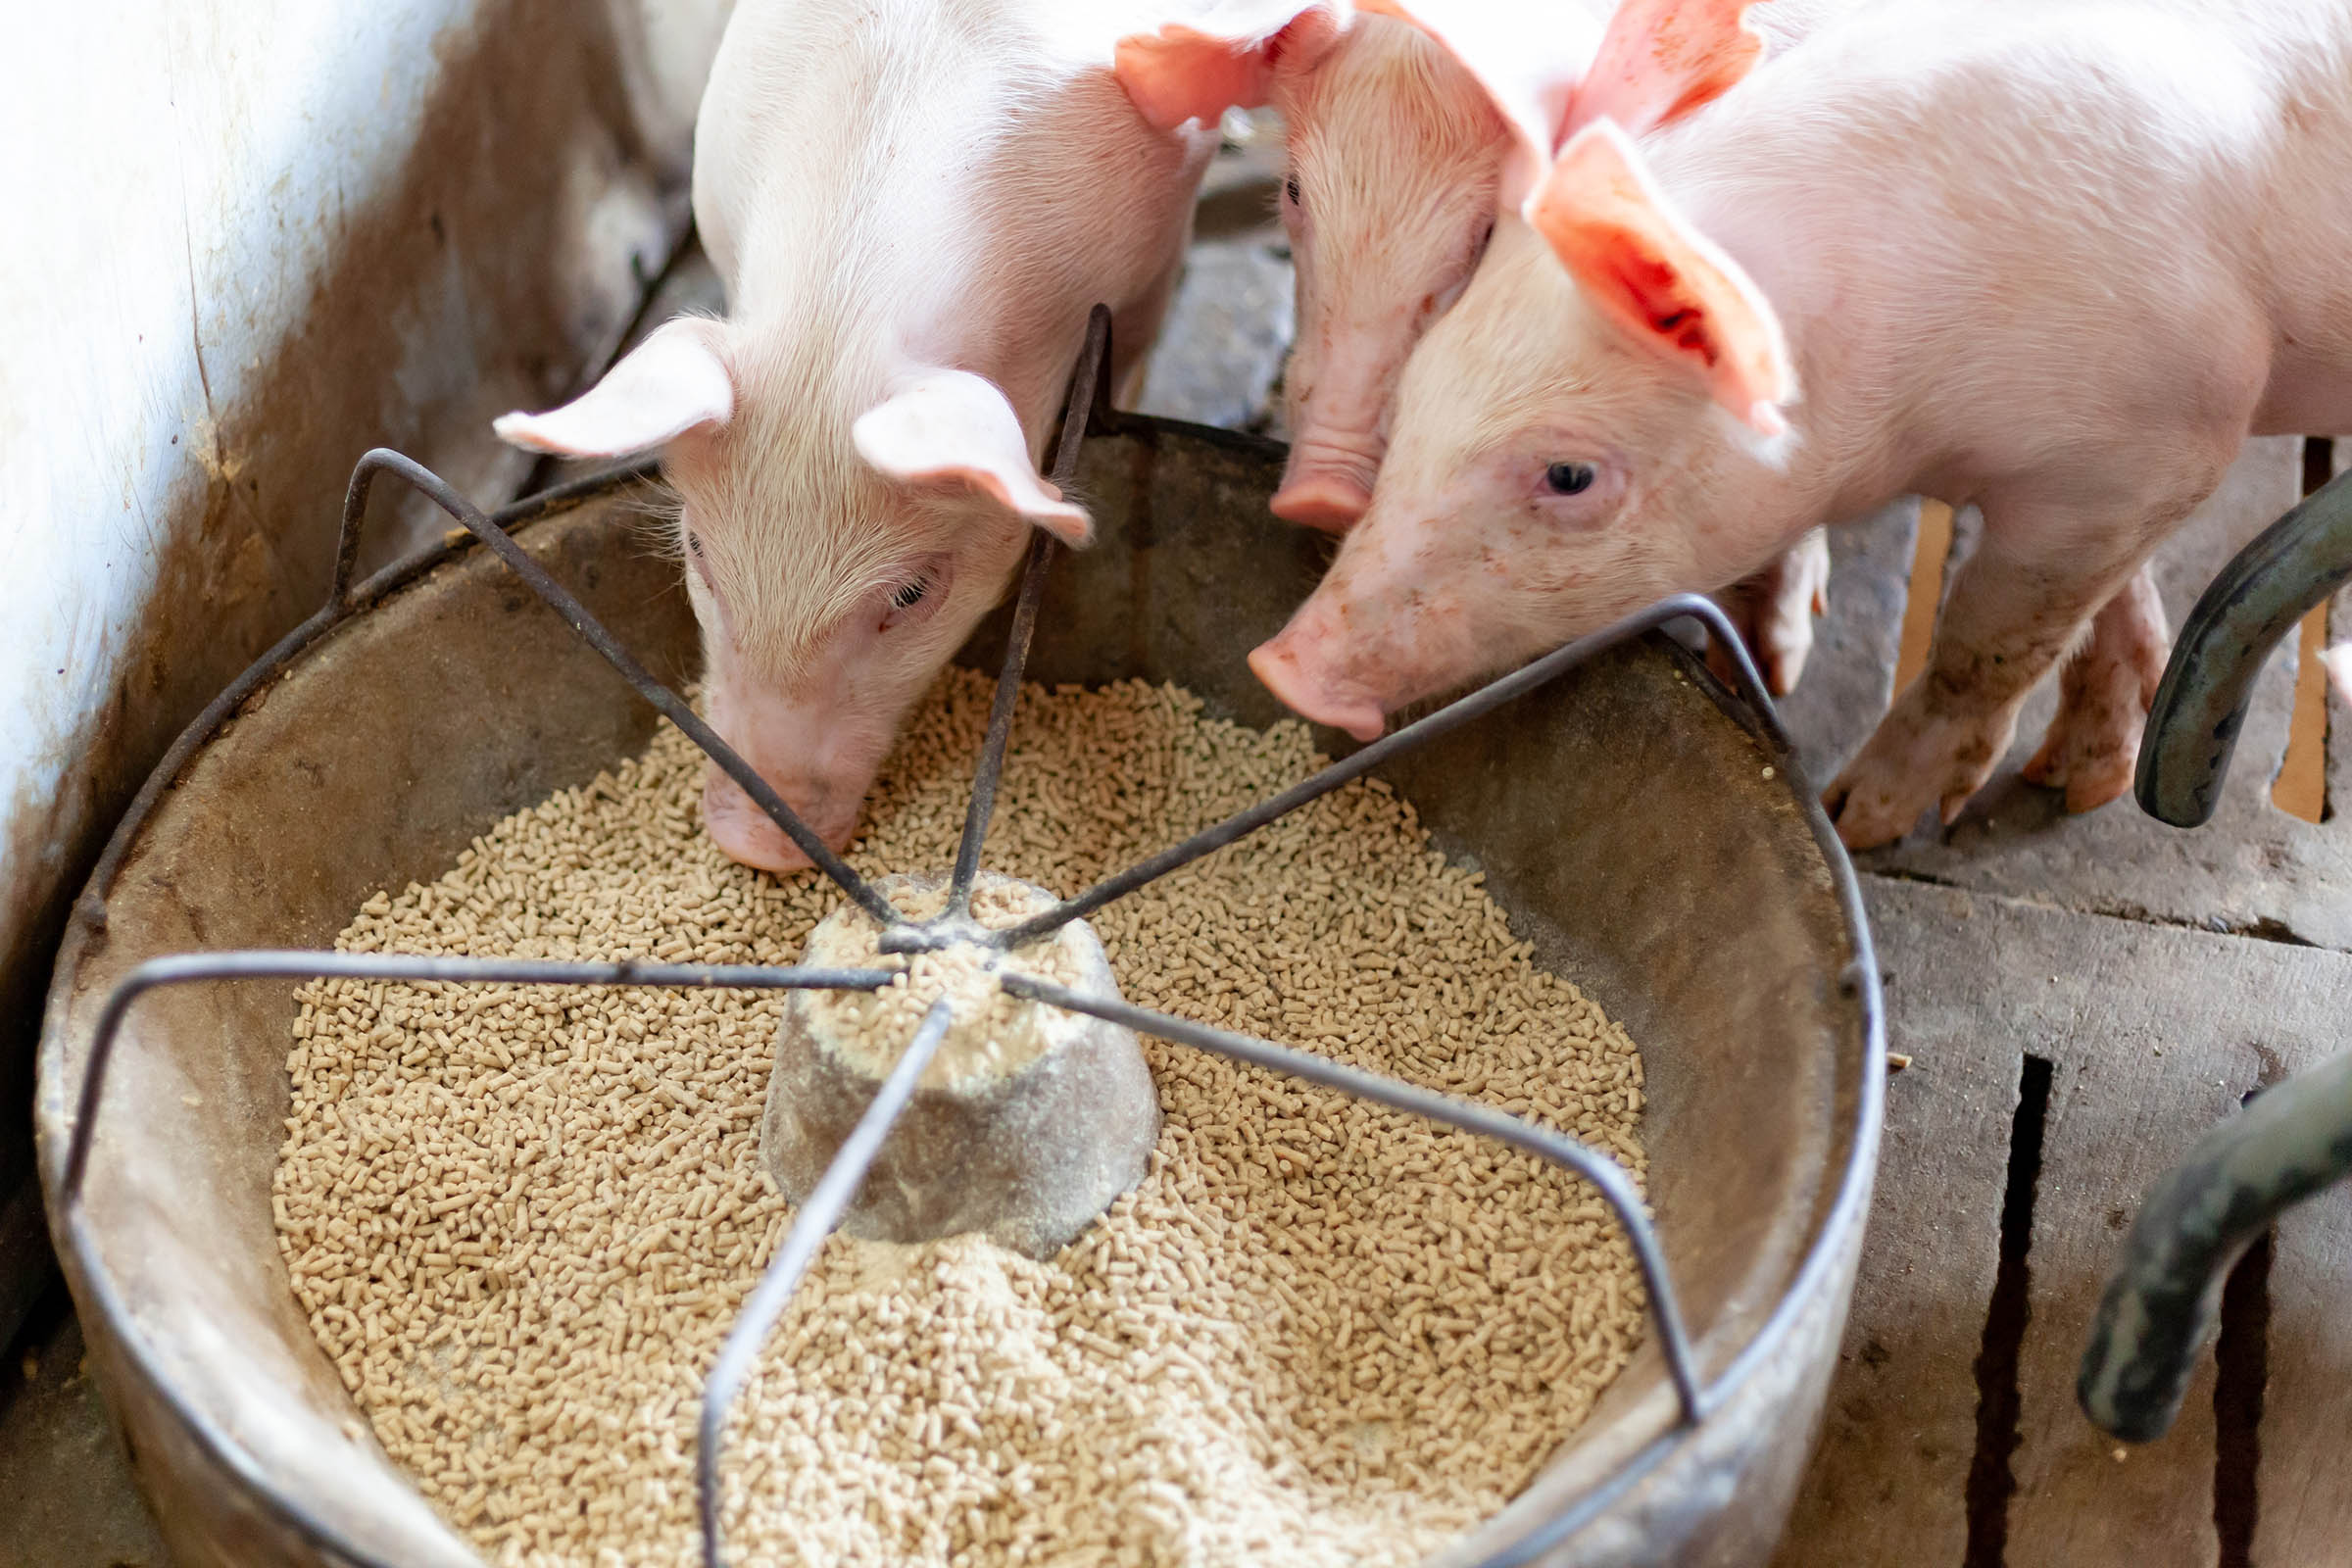 Pigs feeding on a farm